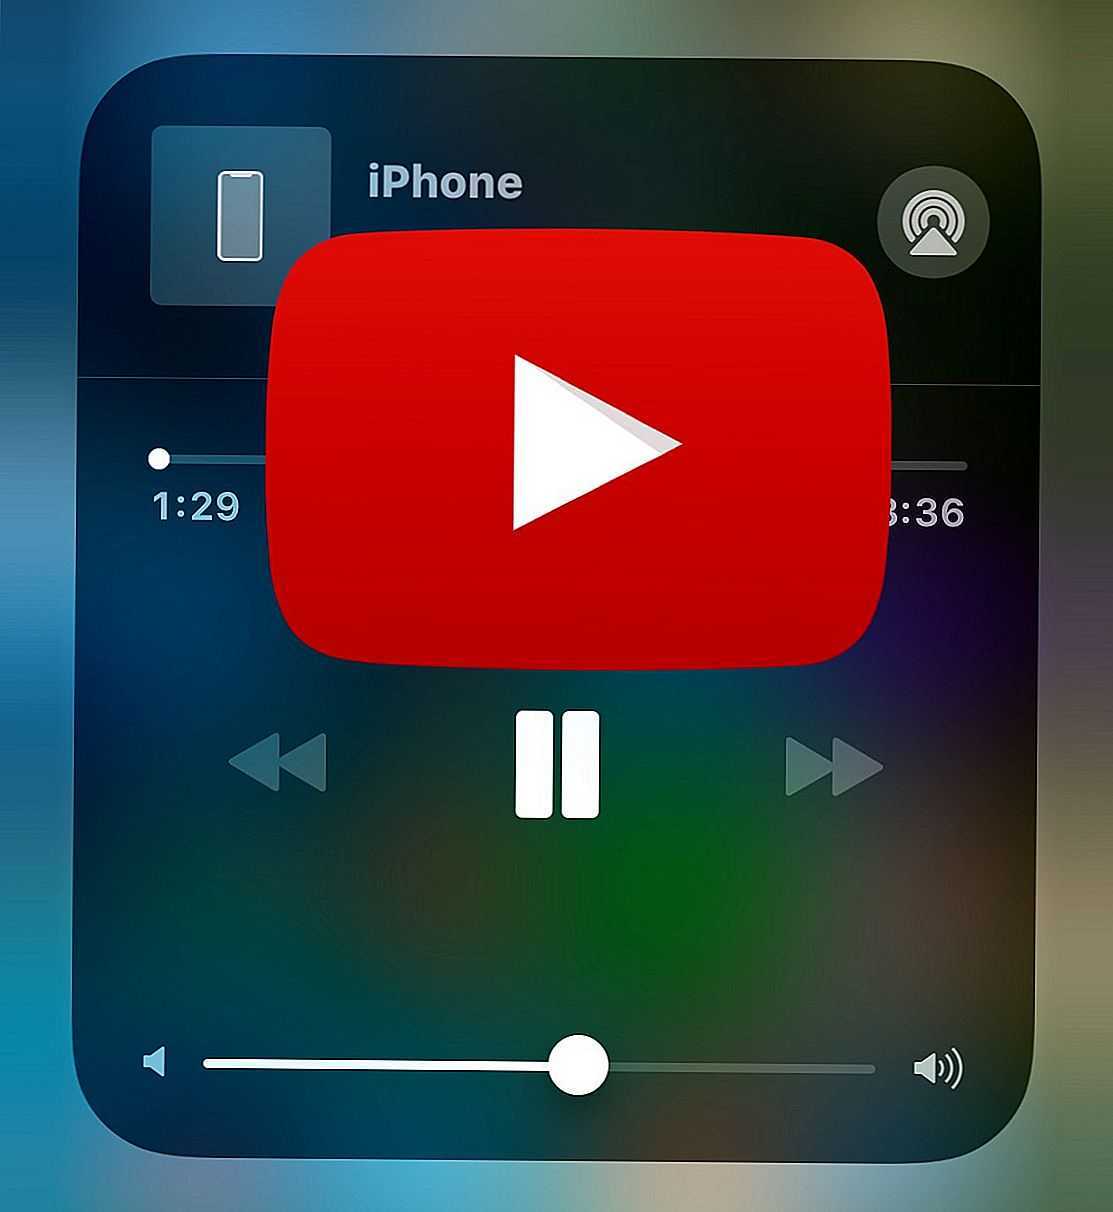 В официальном клиенте YouTube для iPhone и iPad появилась возможность перематывать видео интервалами по 10 секунд